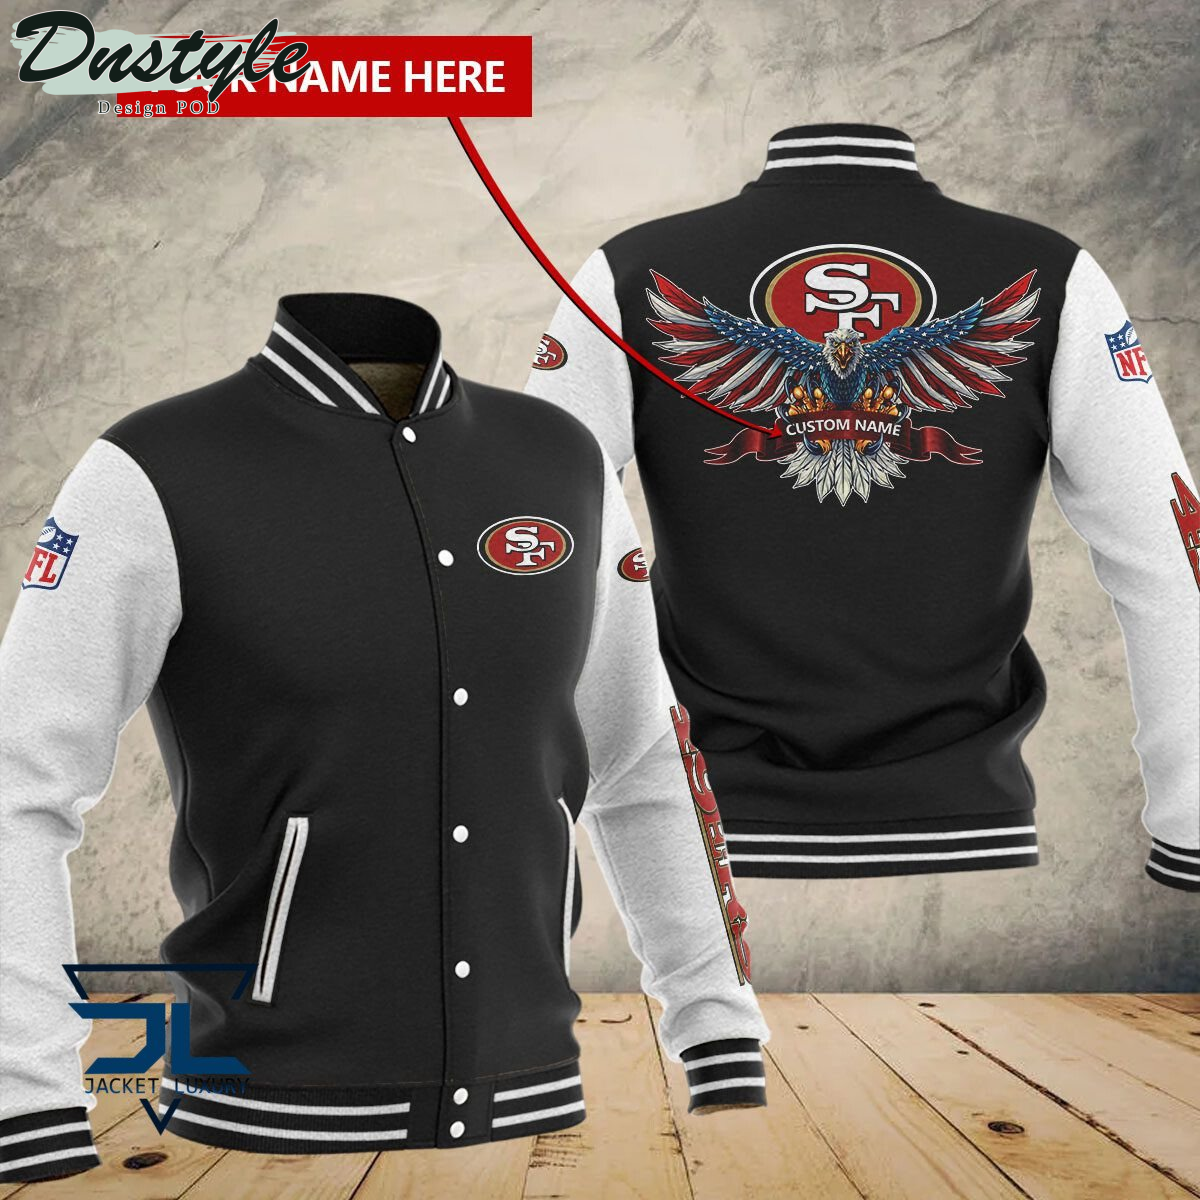 San Francisco 49ers Eagles Custom Name Baseball Jacket